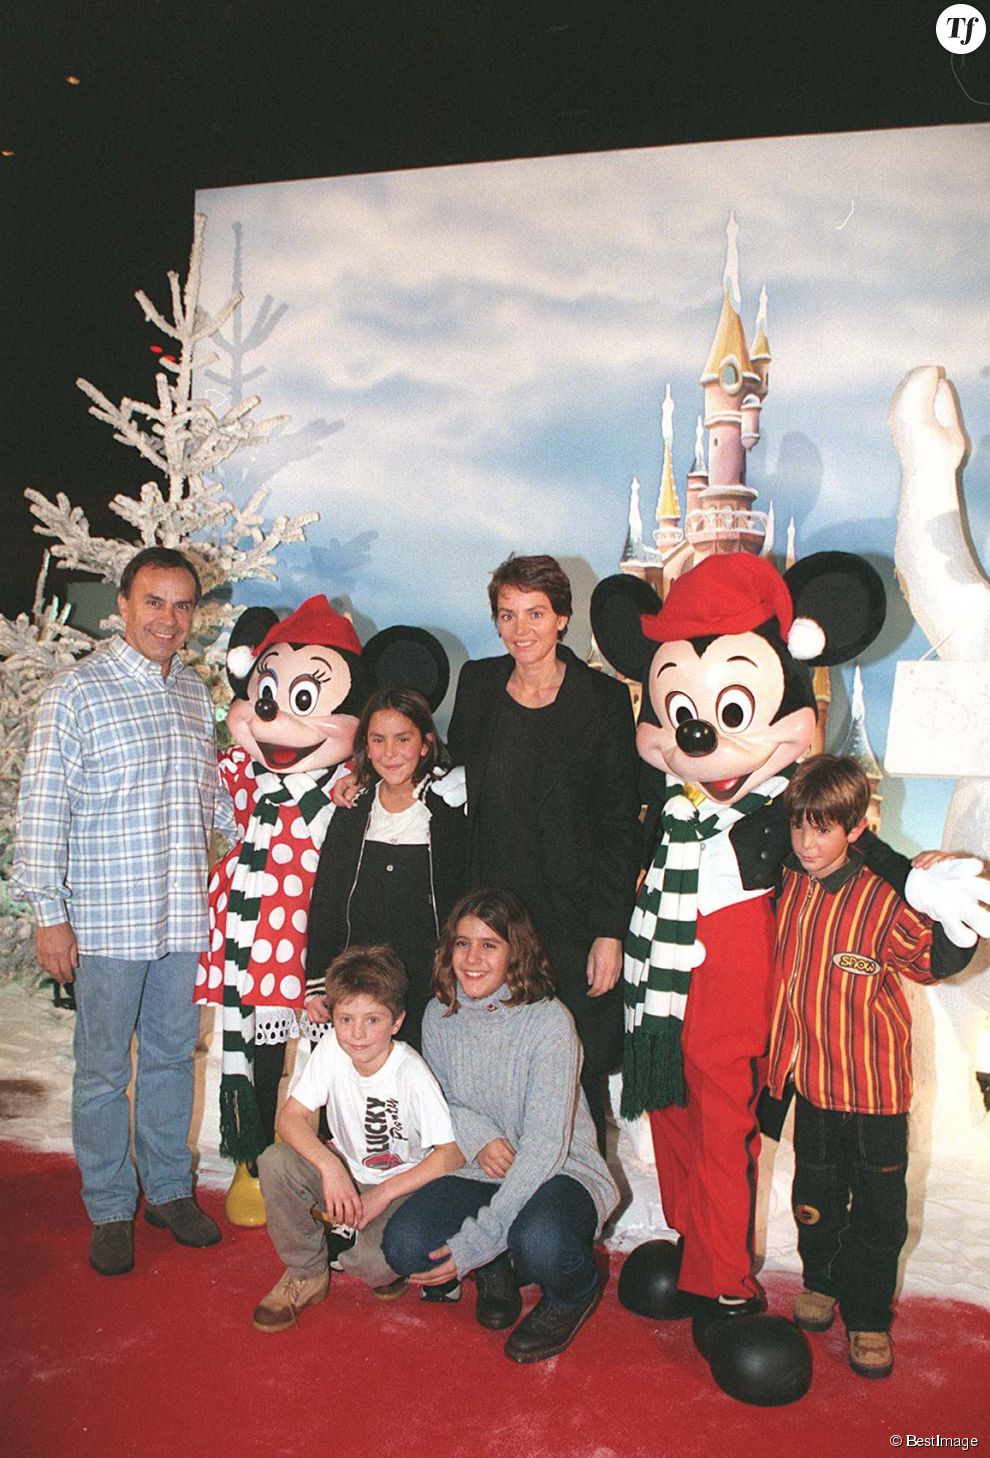  Patrice, Cendrine Dominguez et leurs enfants Léa et Léo à Disneyland 